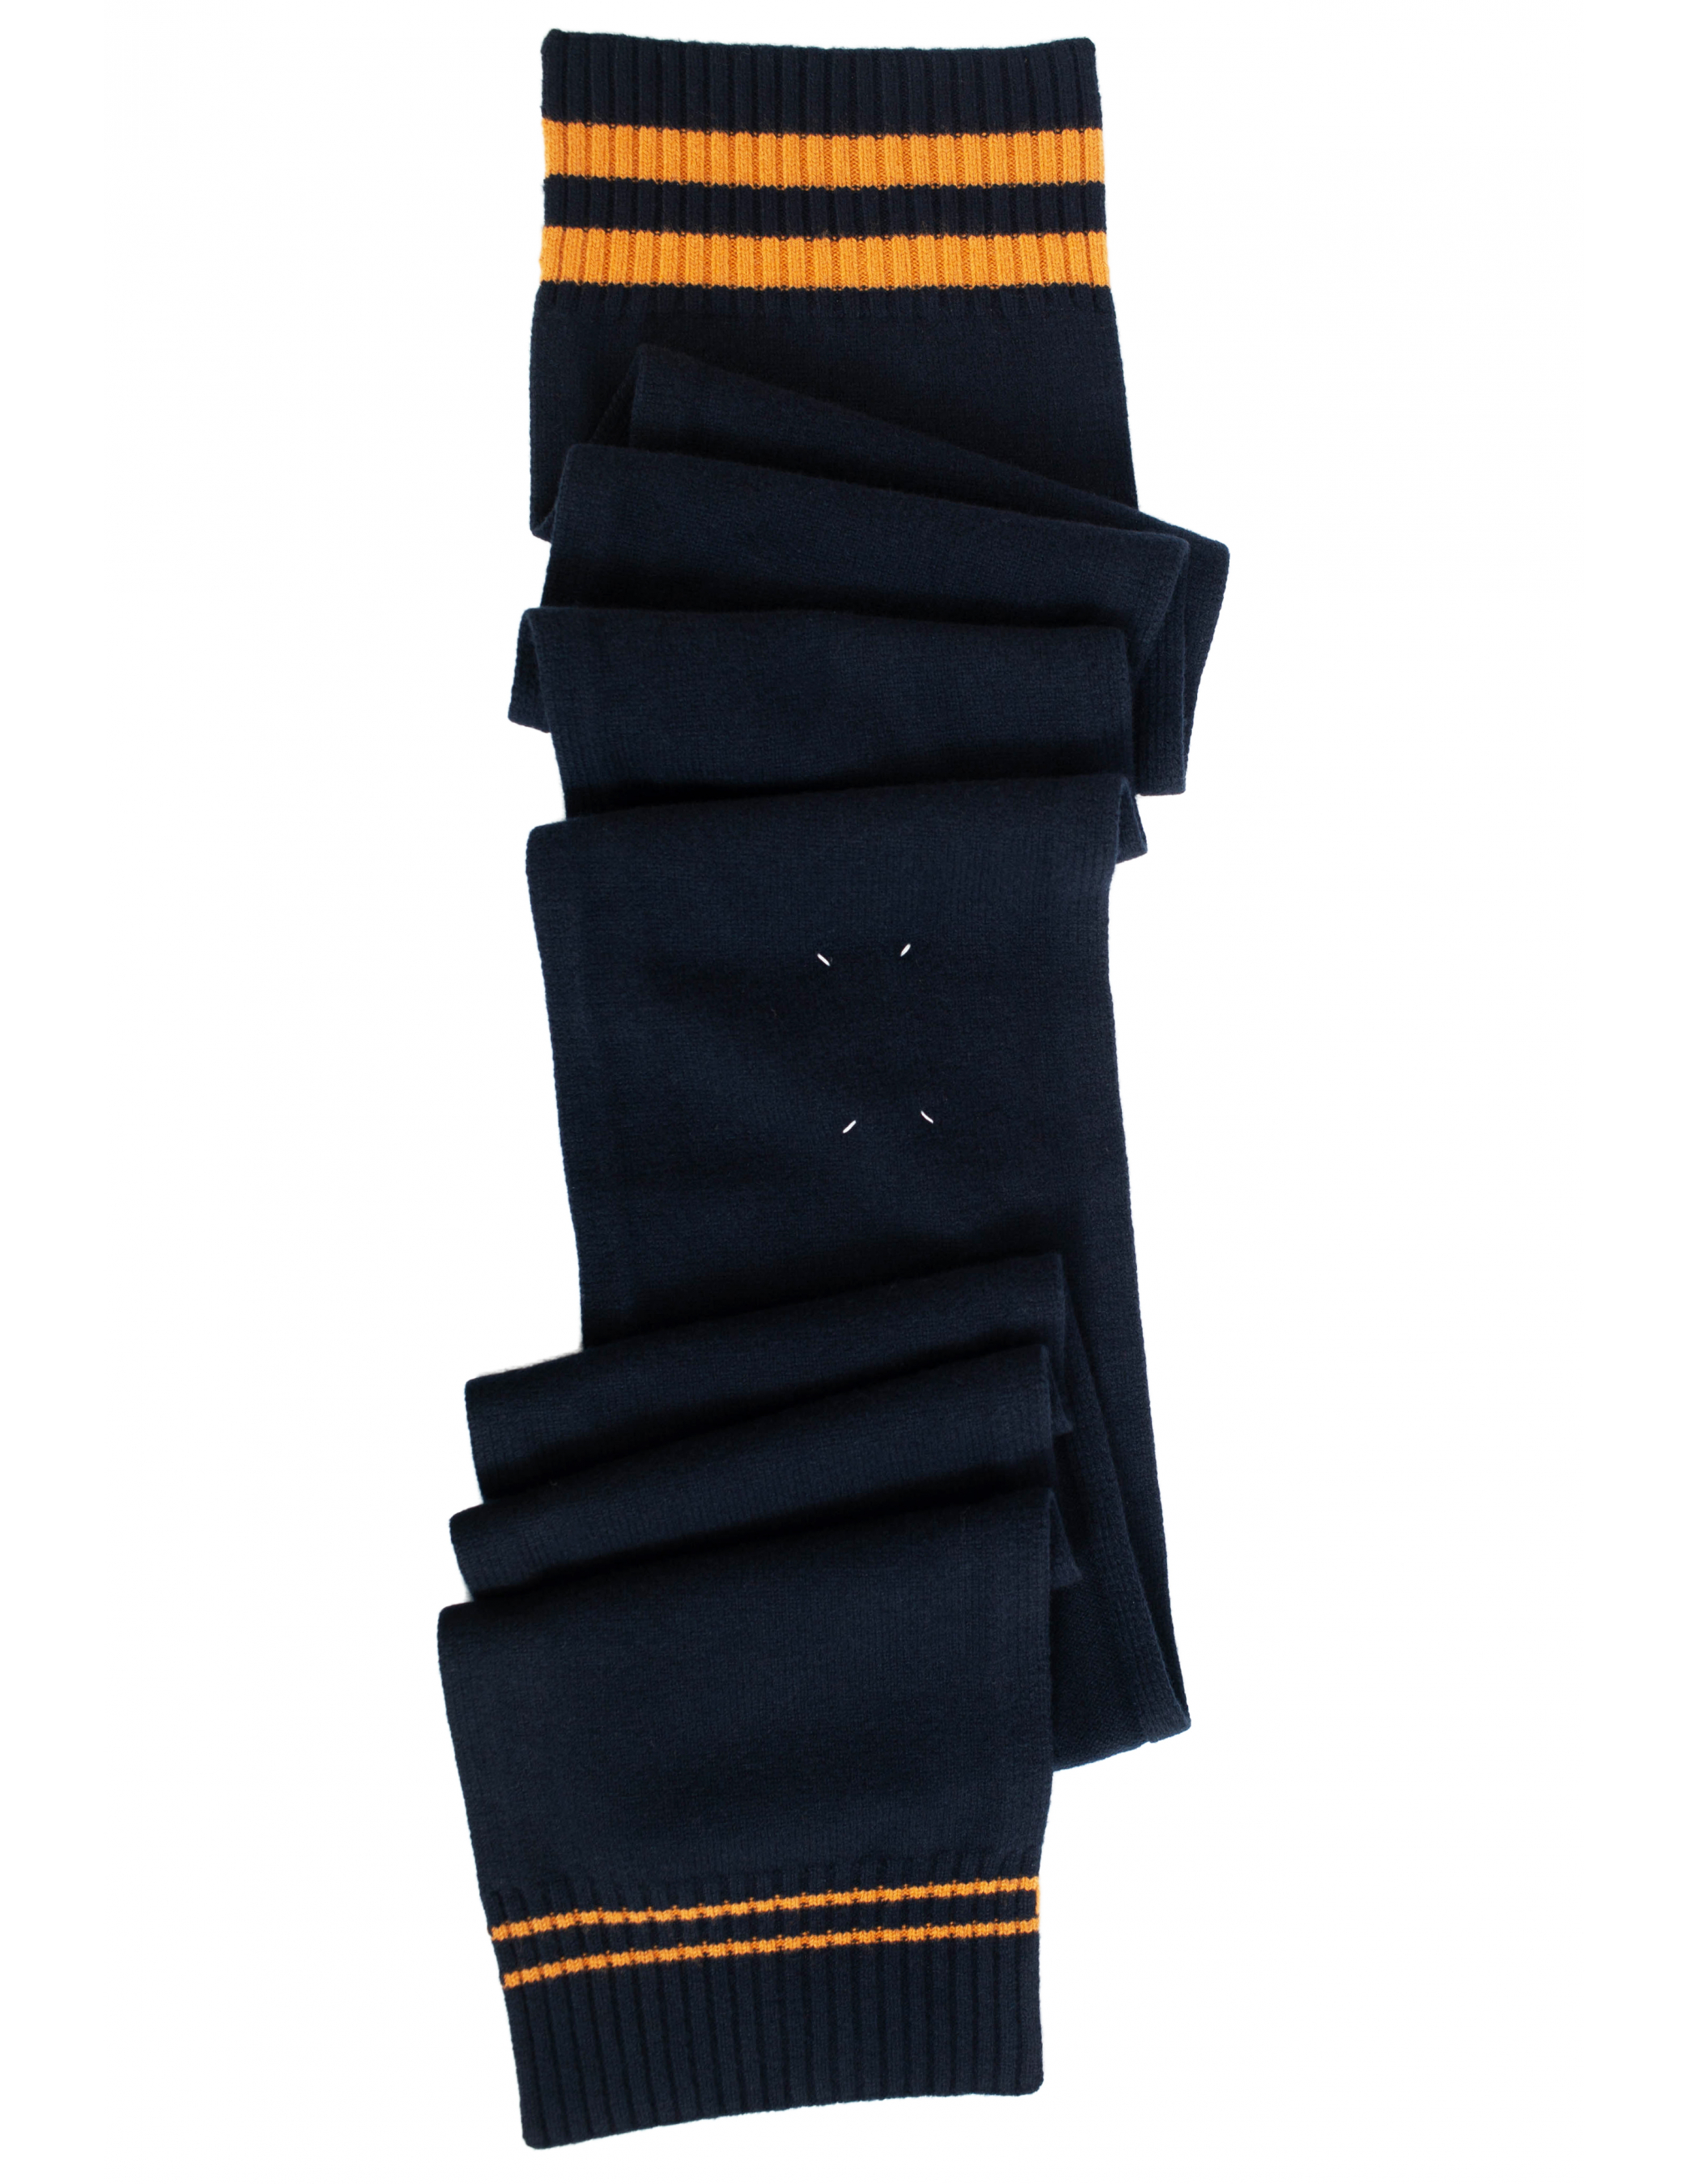 Синий шарф с контрастными полосками Maison Margiela S50TE0085/S17834/511F, размер One Size S50TE0085/S17834/511F - фото 2